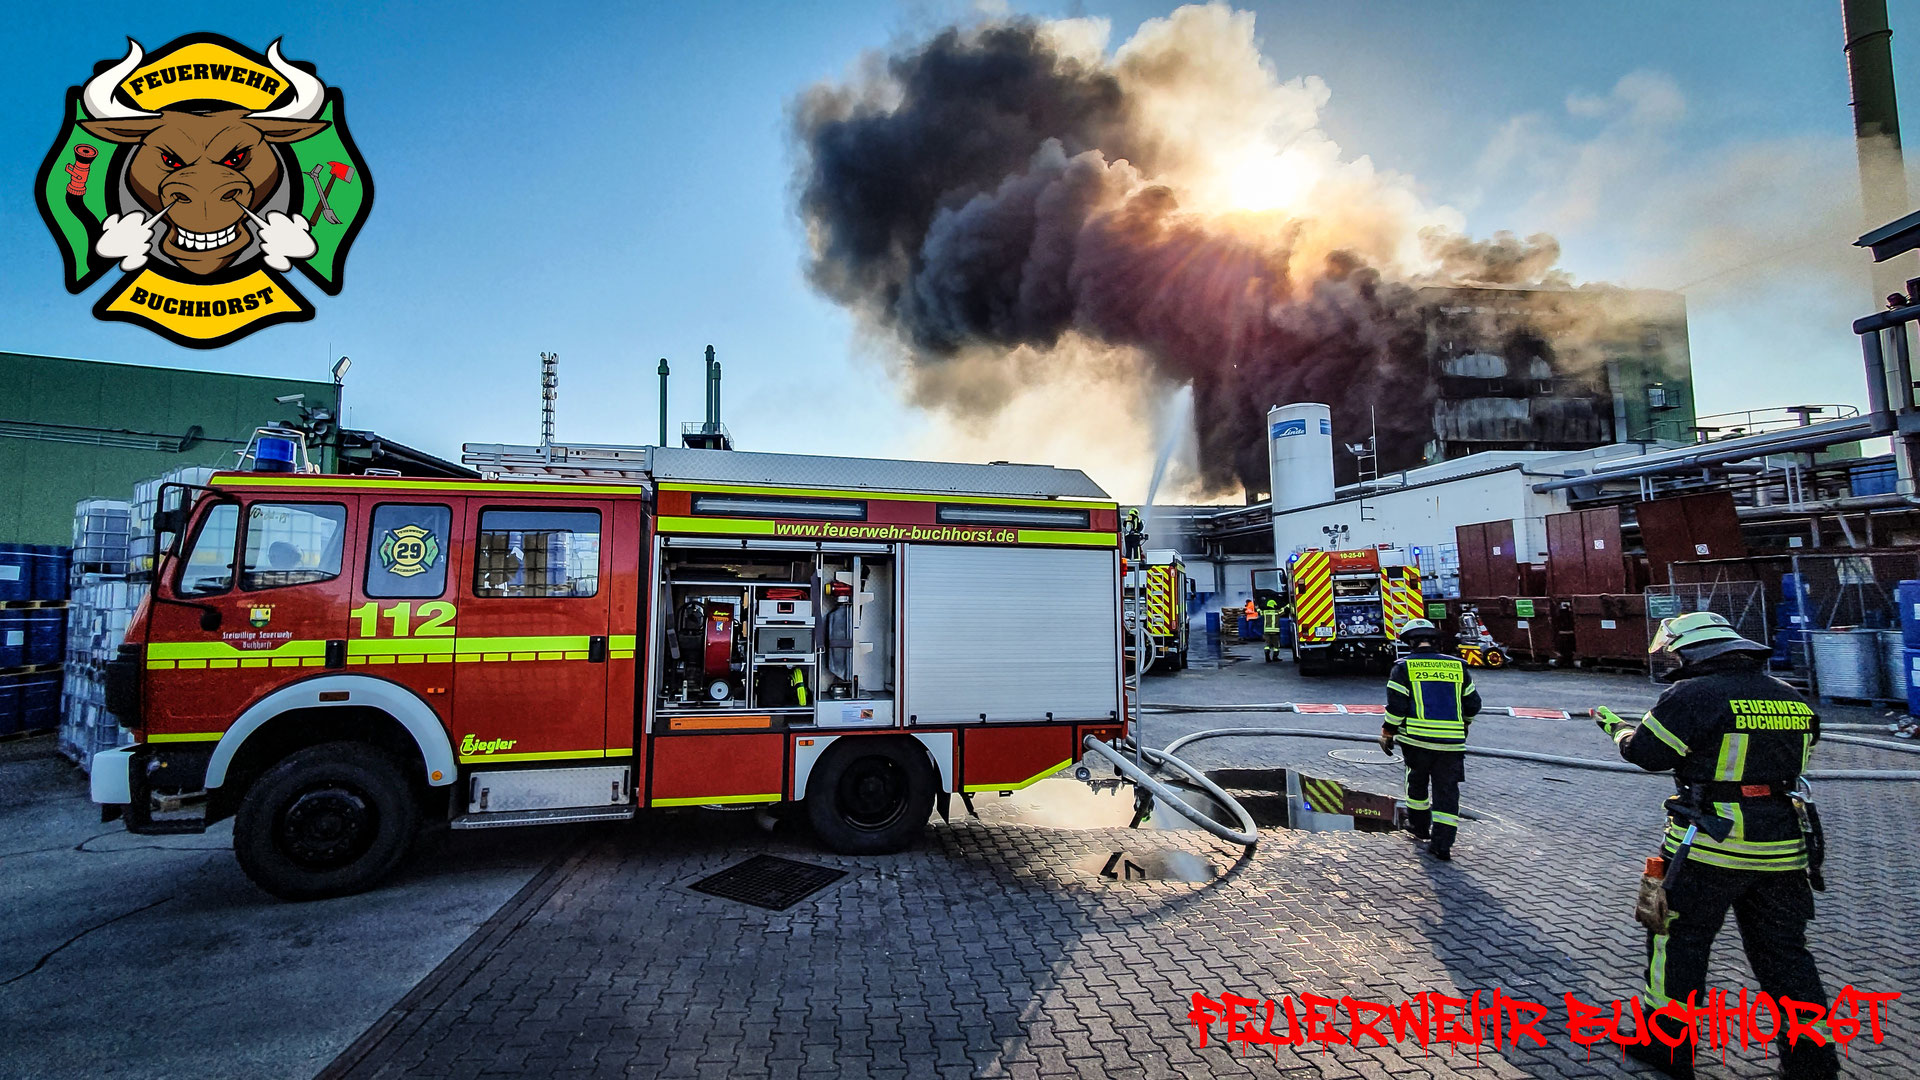 (c) Feuerwehr-buchhorst.de